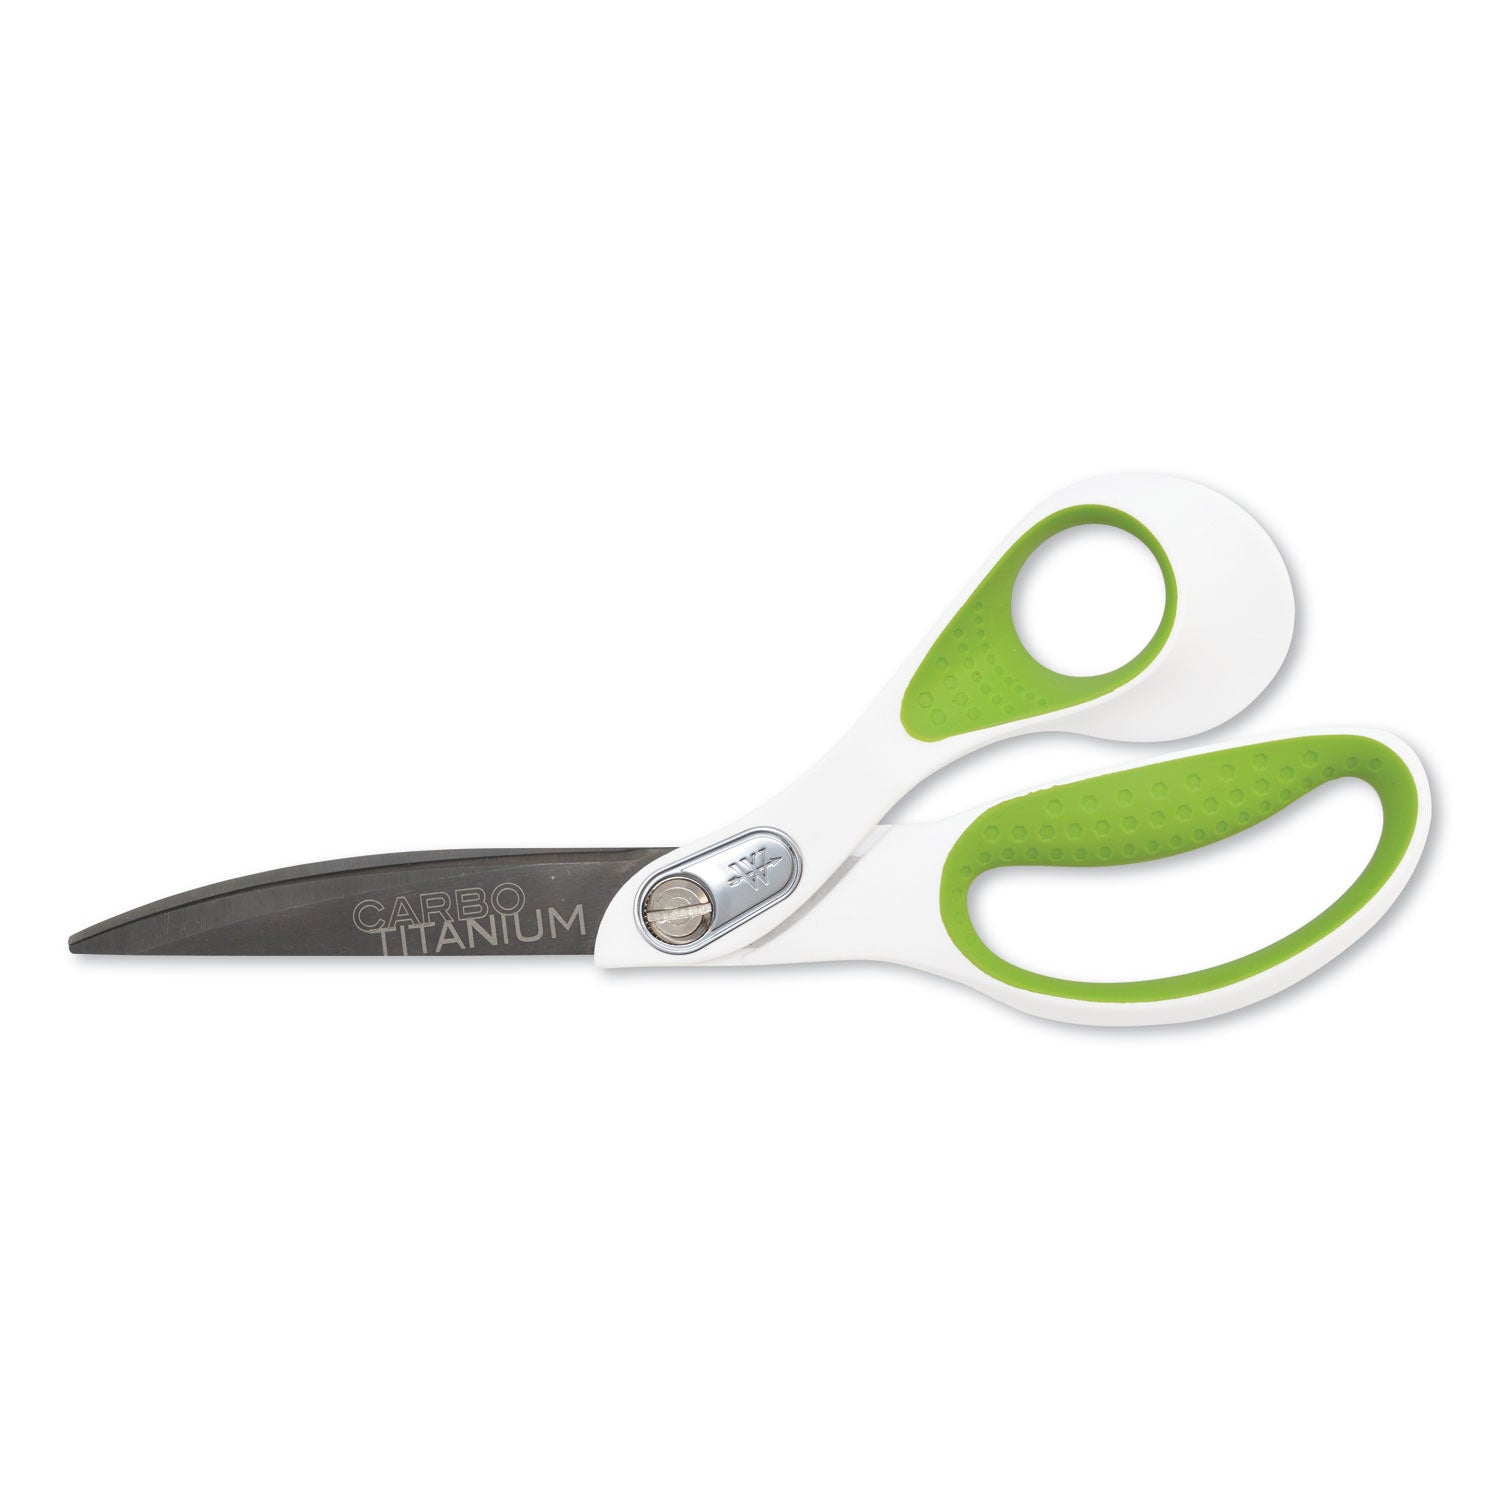 carbotitanium-bonded-scissors-9-long-45-cut-length-white-green-bent-handle_acm16445 - 1